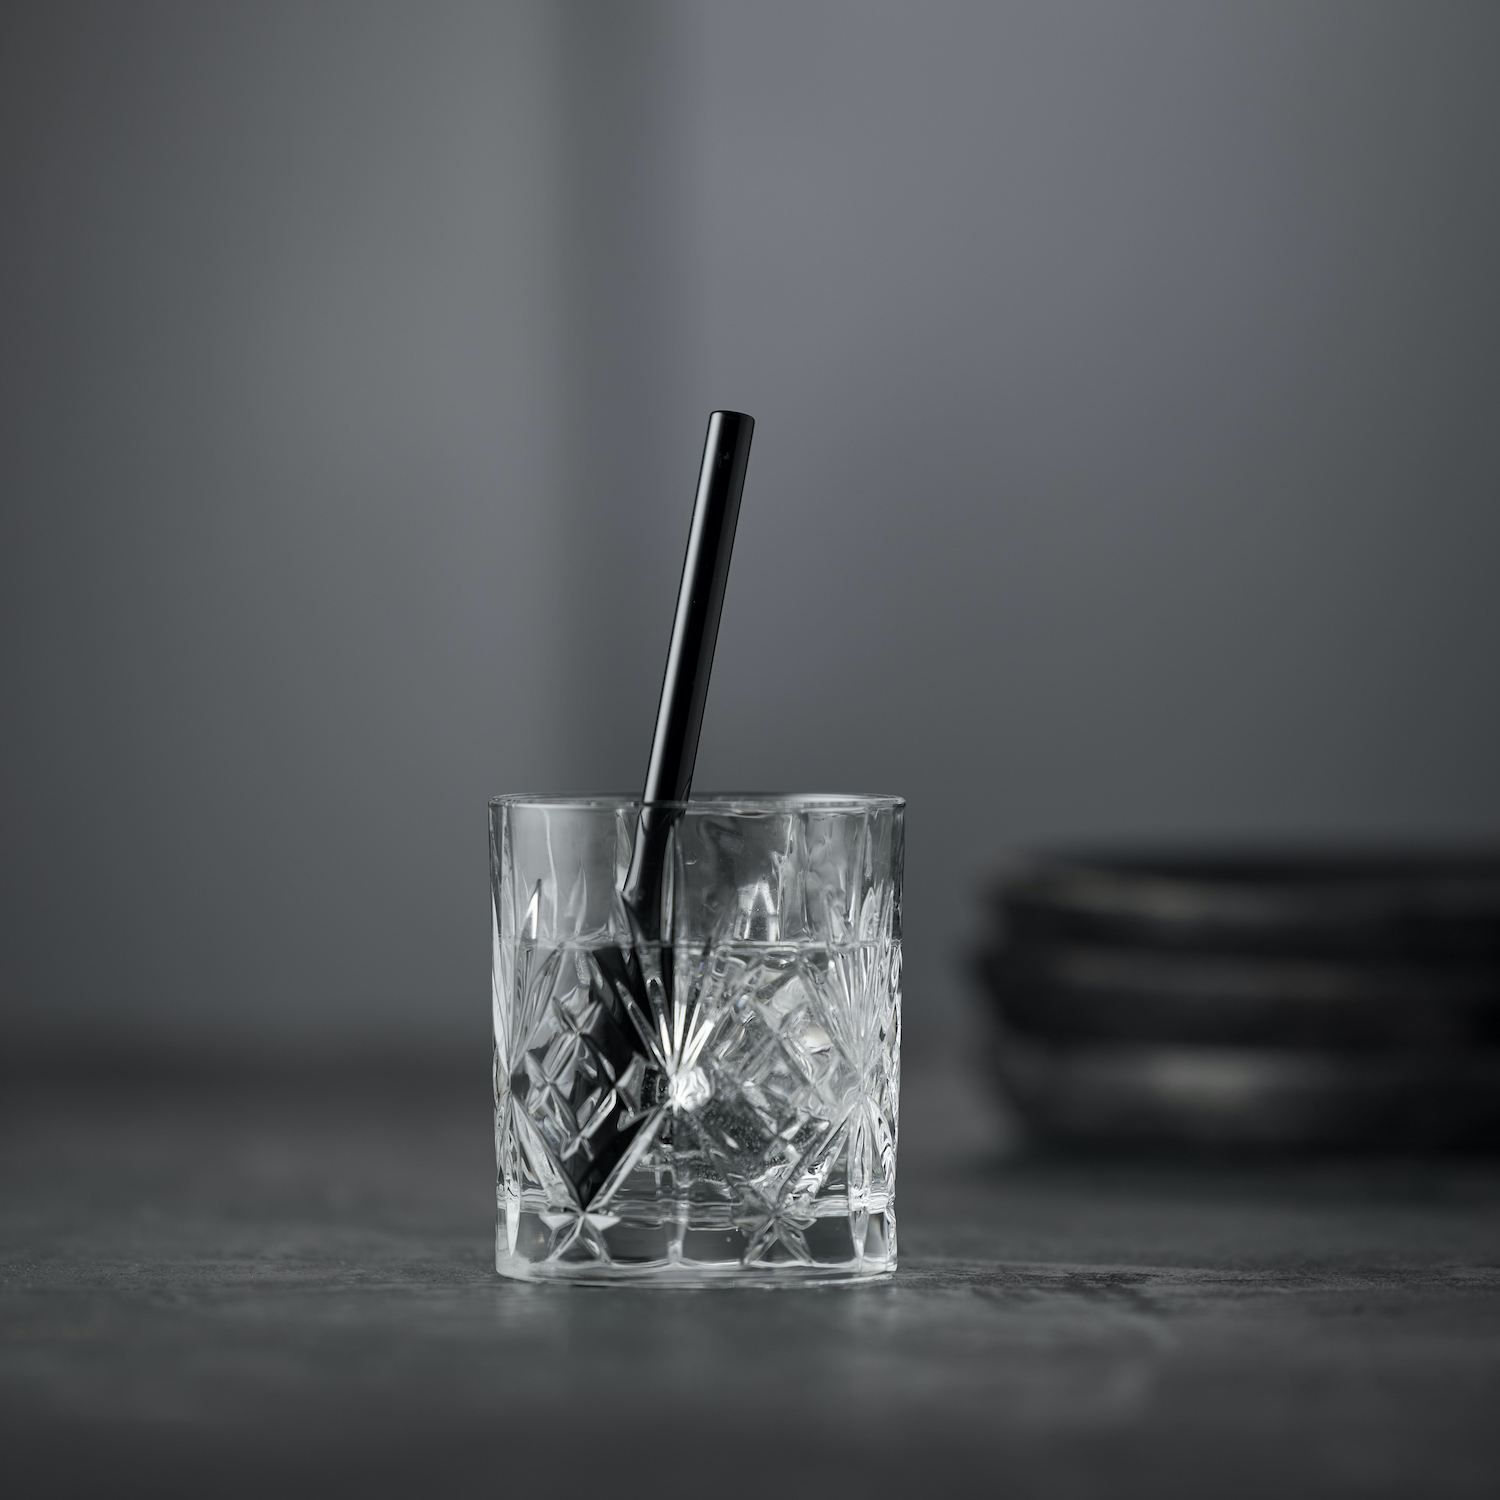 Lyngby Glas straws 14,5 cm (6 pcs) – black